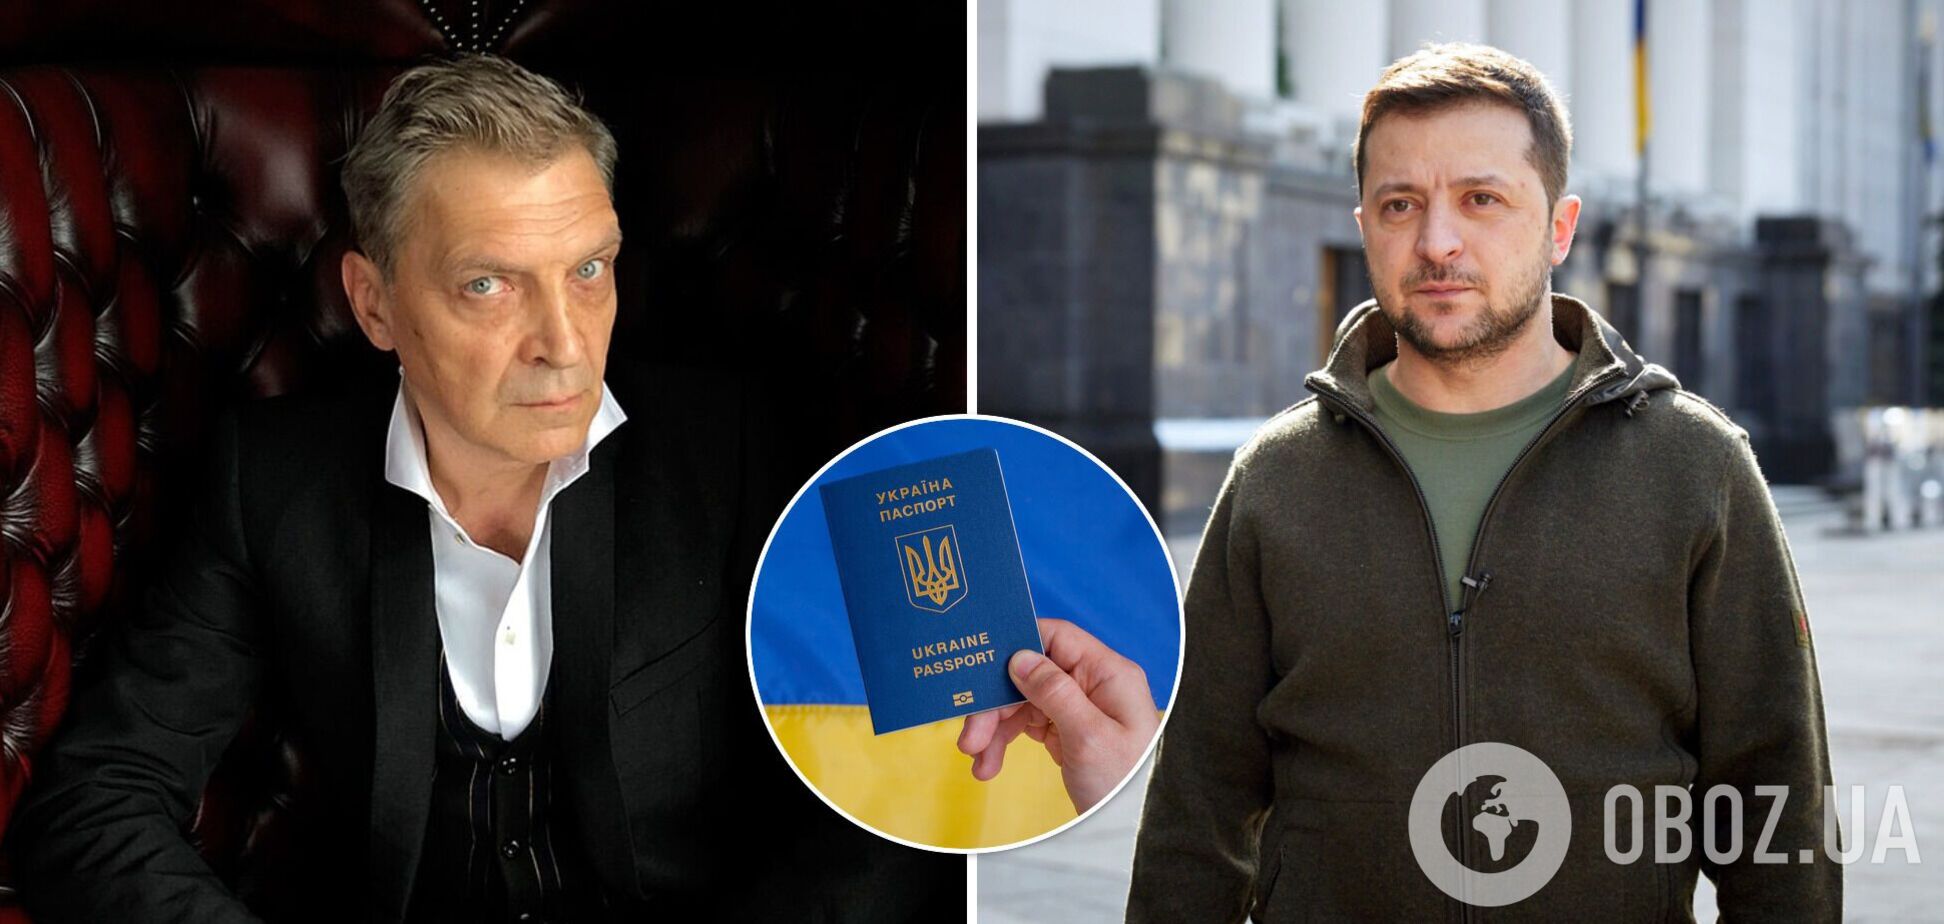 Невзоров назвав себе дорогоцінним союзником для воюючої України: Зеленським керував холодний розрахунок